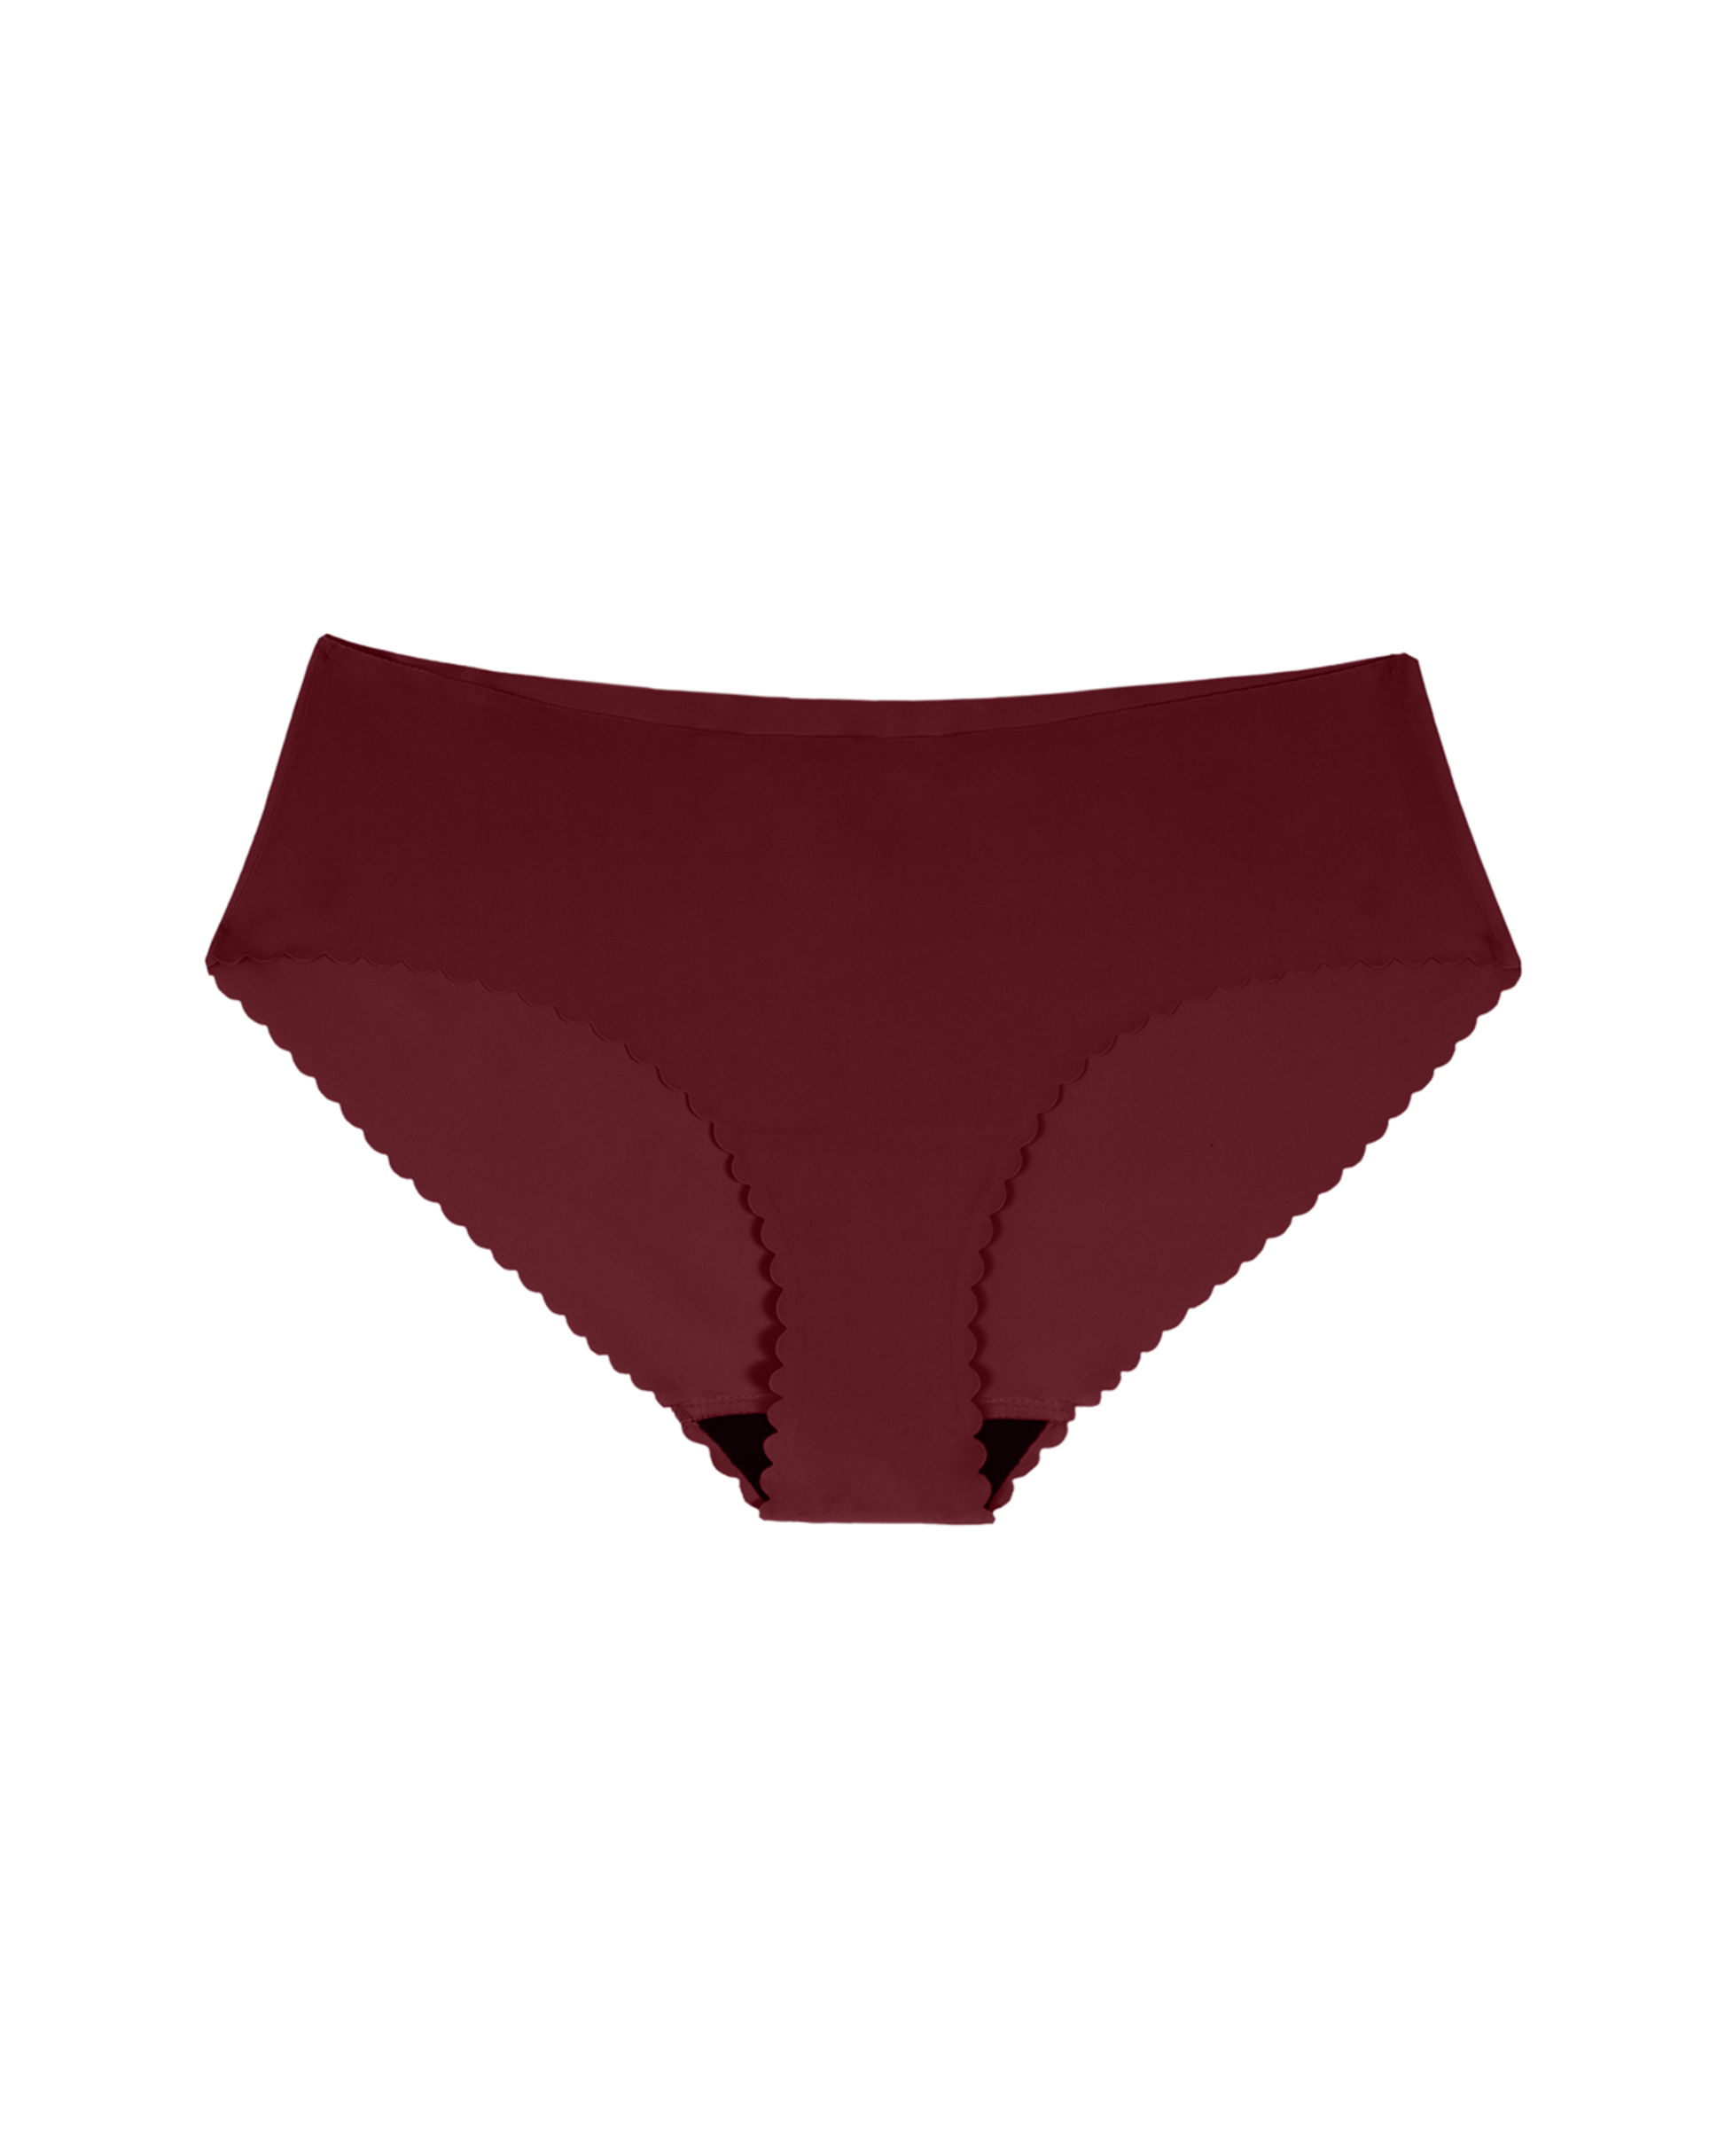 8-16T Teen Girls Cotton Underwear Hipster Briefs 6-Pack Undies Period  Panties